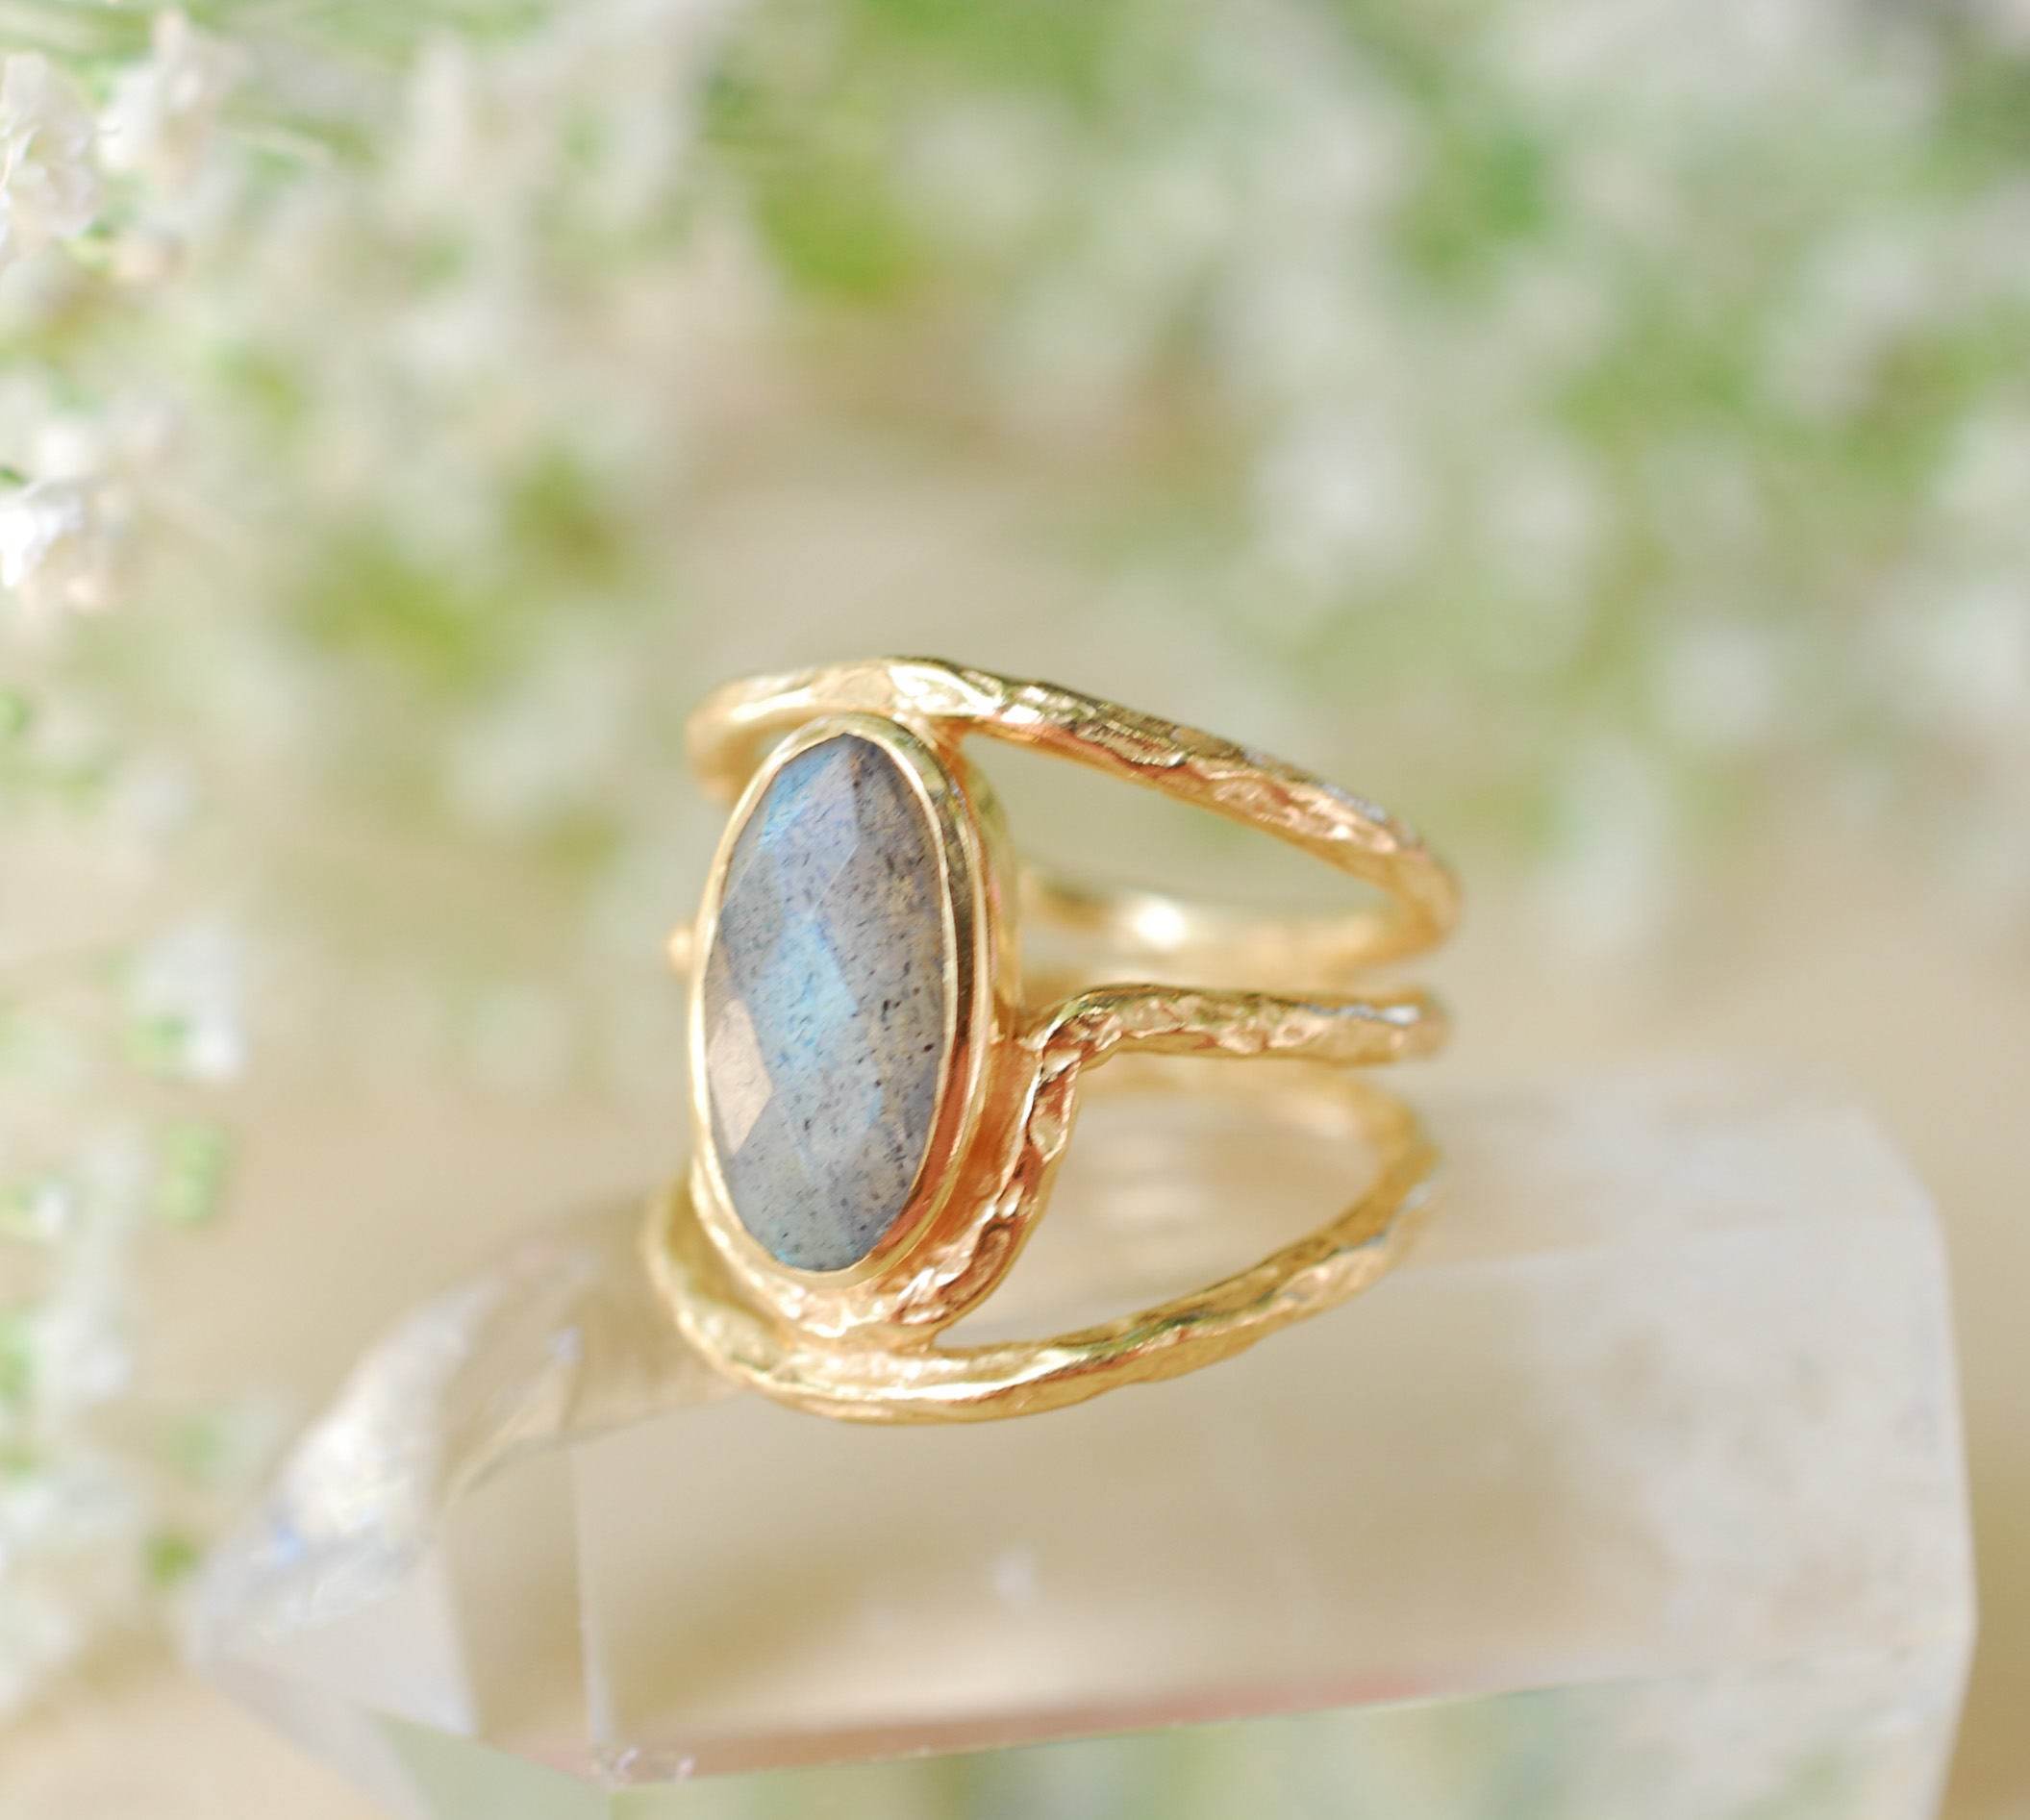 Blue Labradorite & Silver Ring - Unalome Silver Design